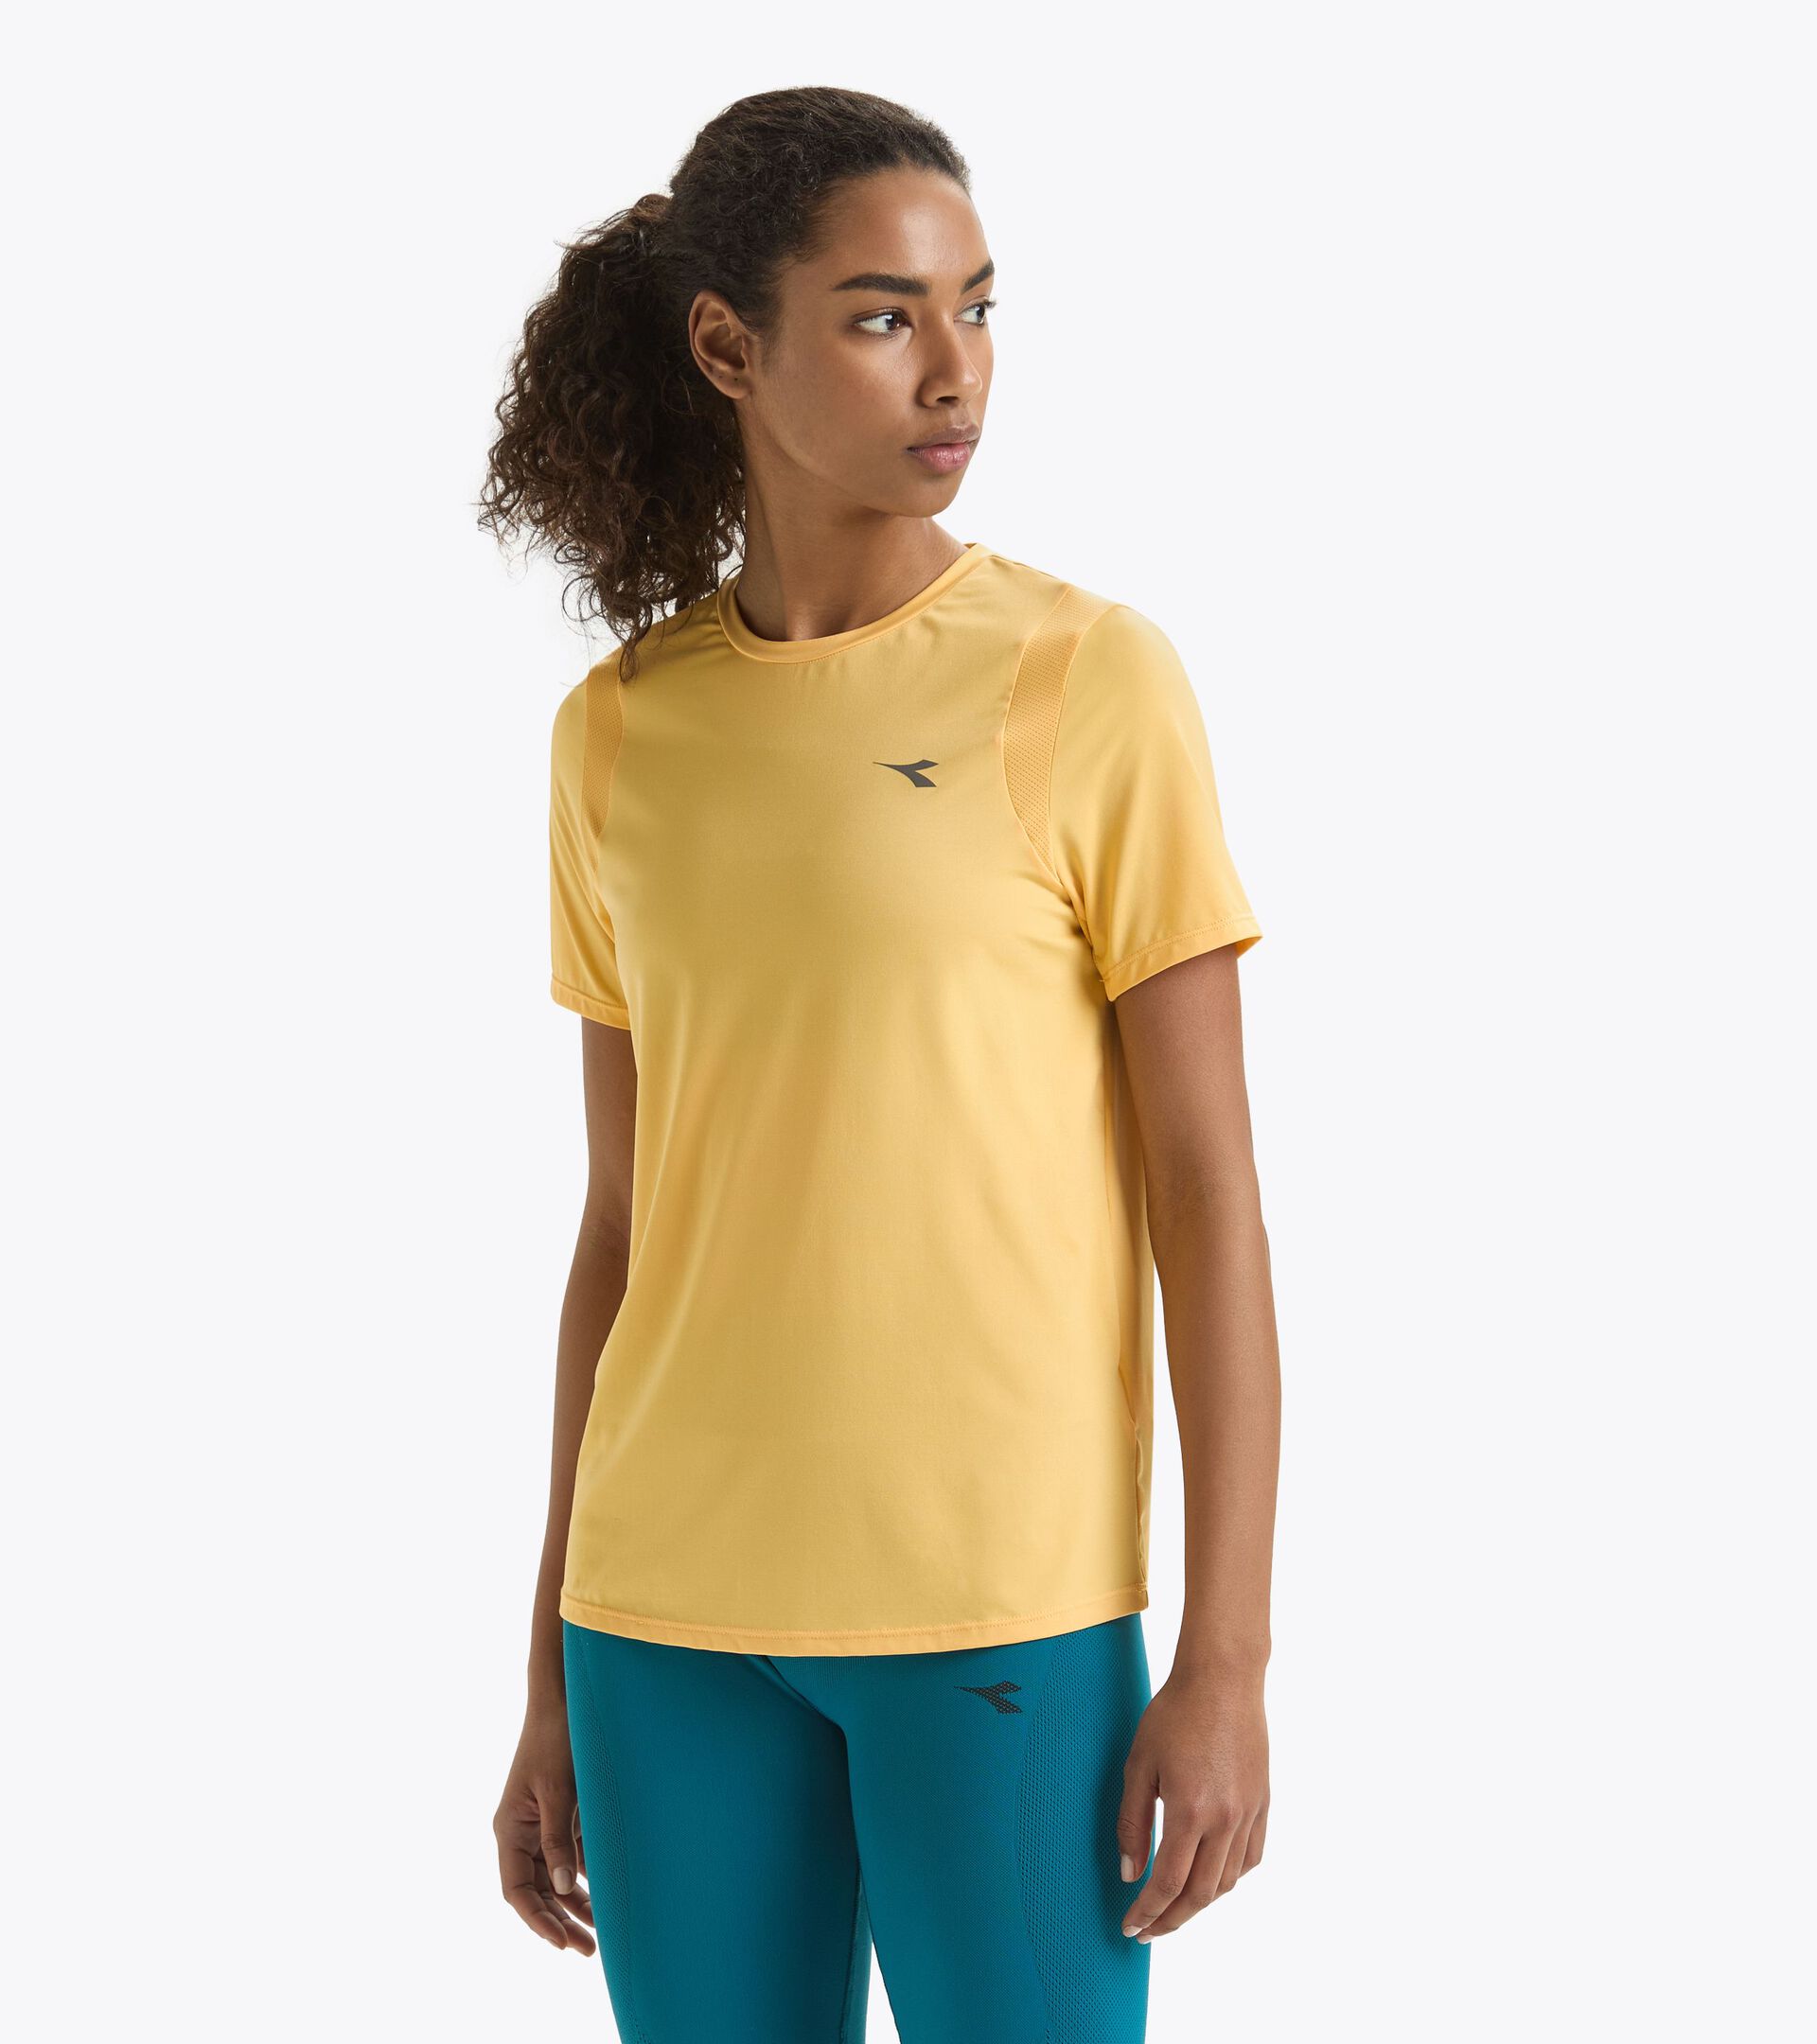 Running t-shirt - Women’s L. SS T-SHIRT TECH RUN CREW PALE MARIGOLD - Diadora